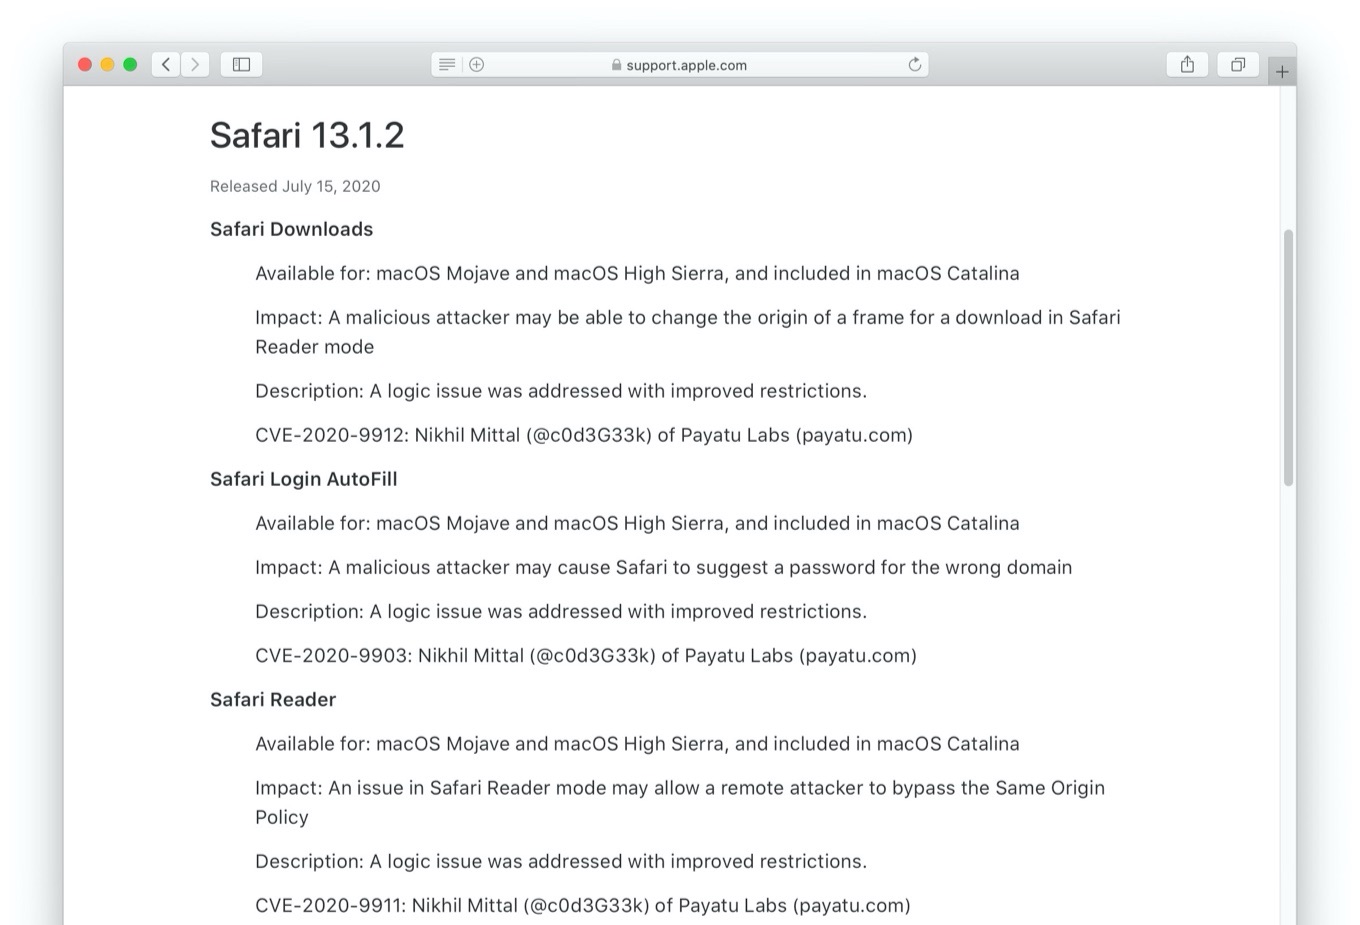 Safari 13.1.2 Login AutoFill